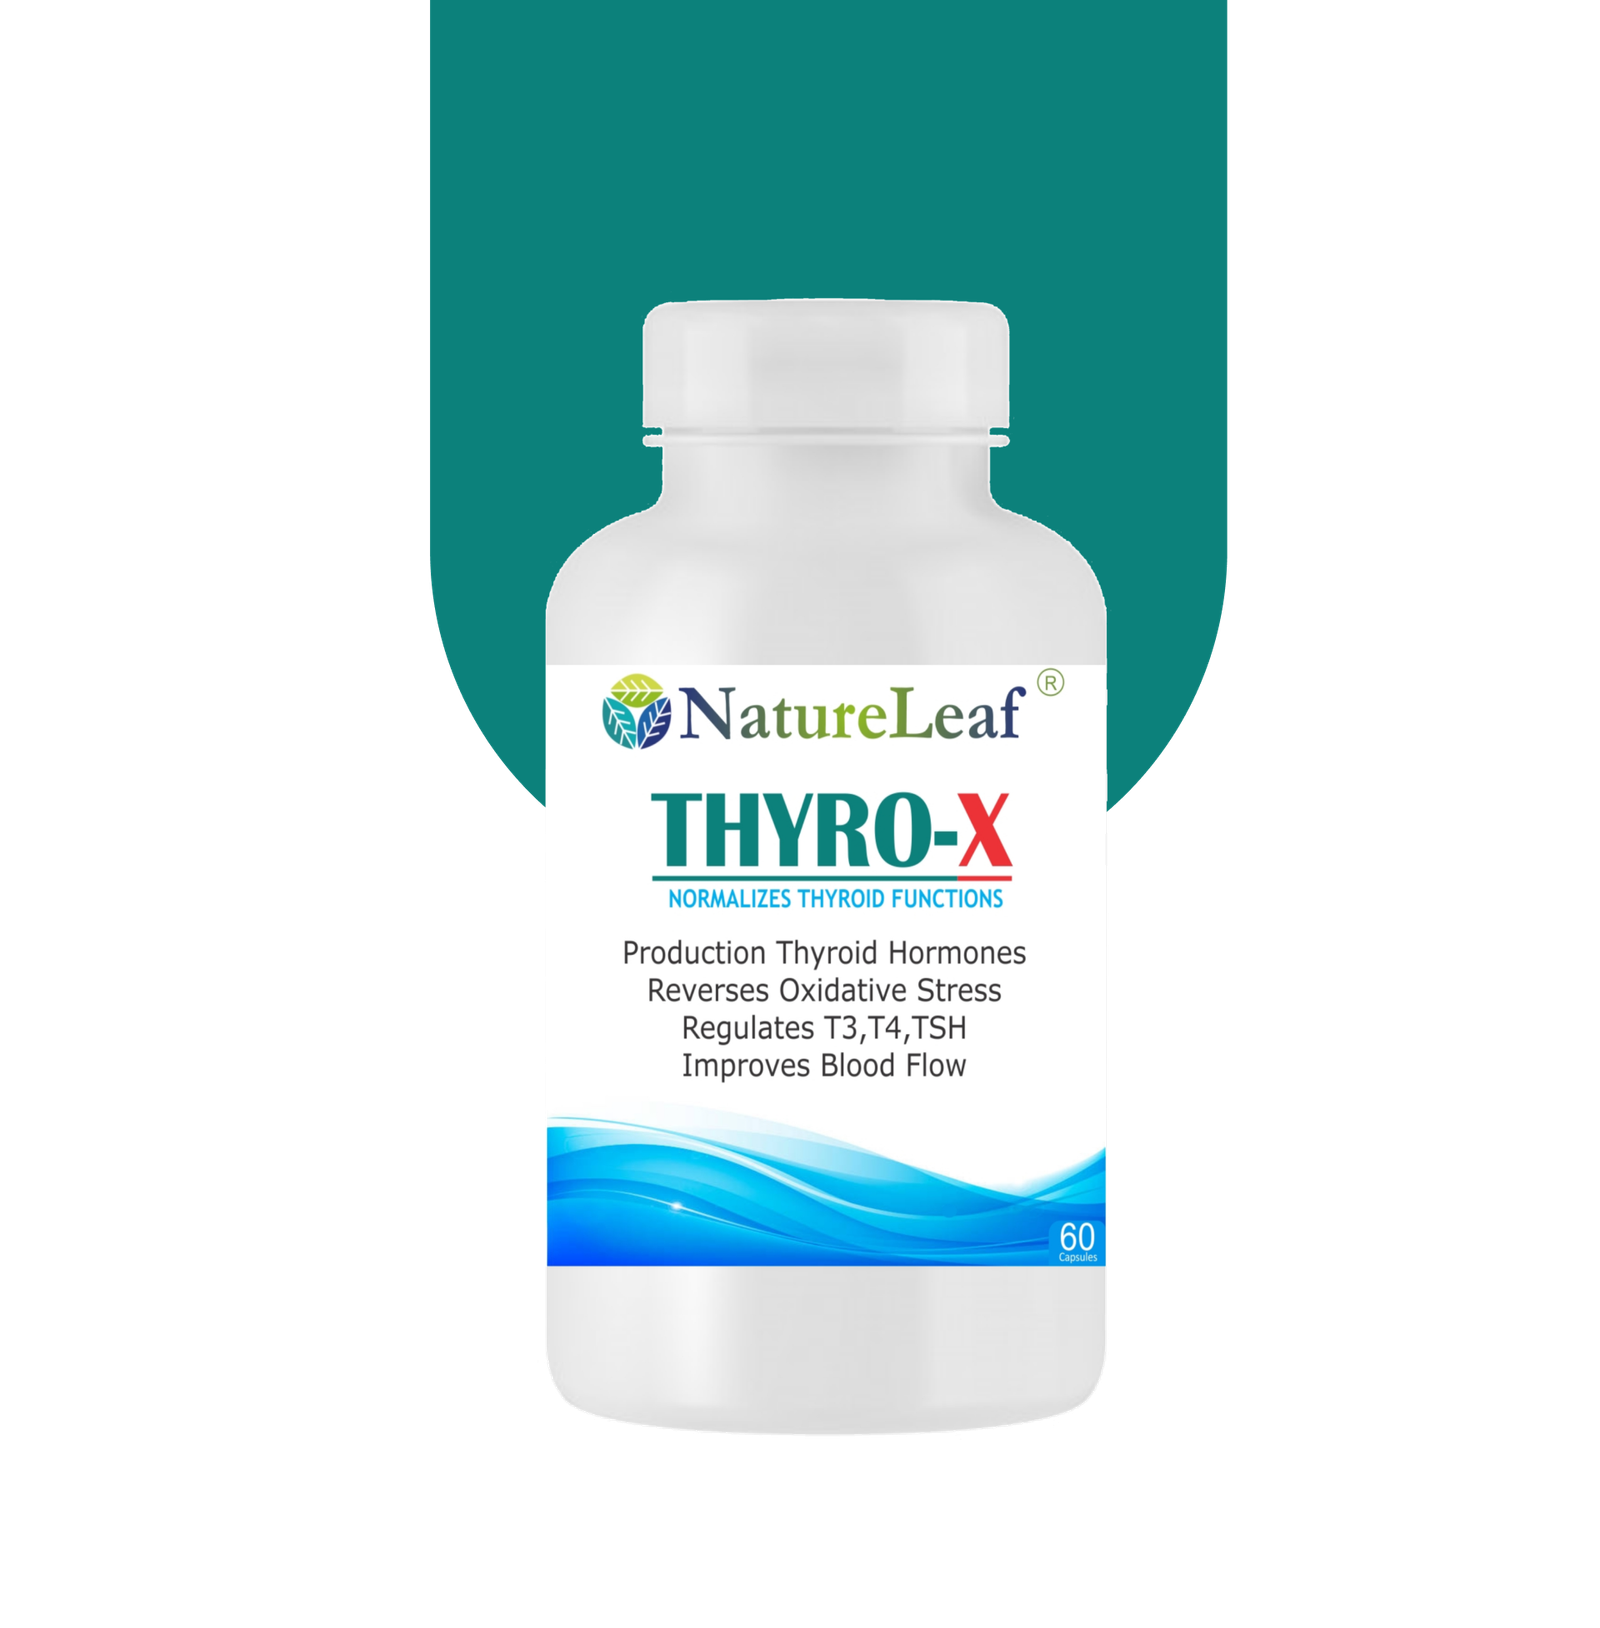 Thyro-X